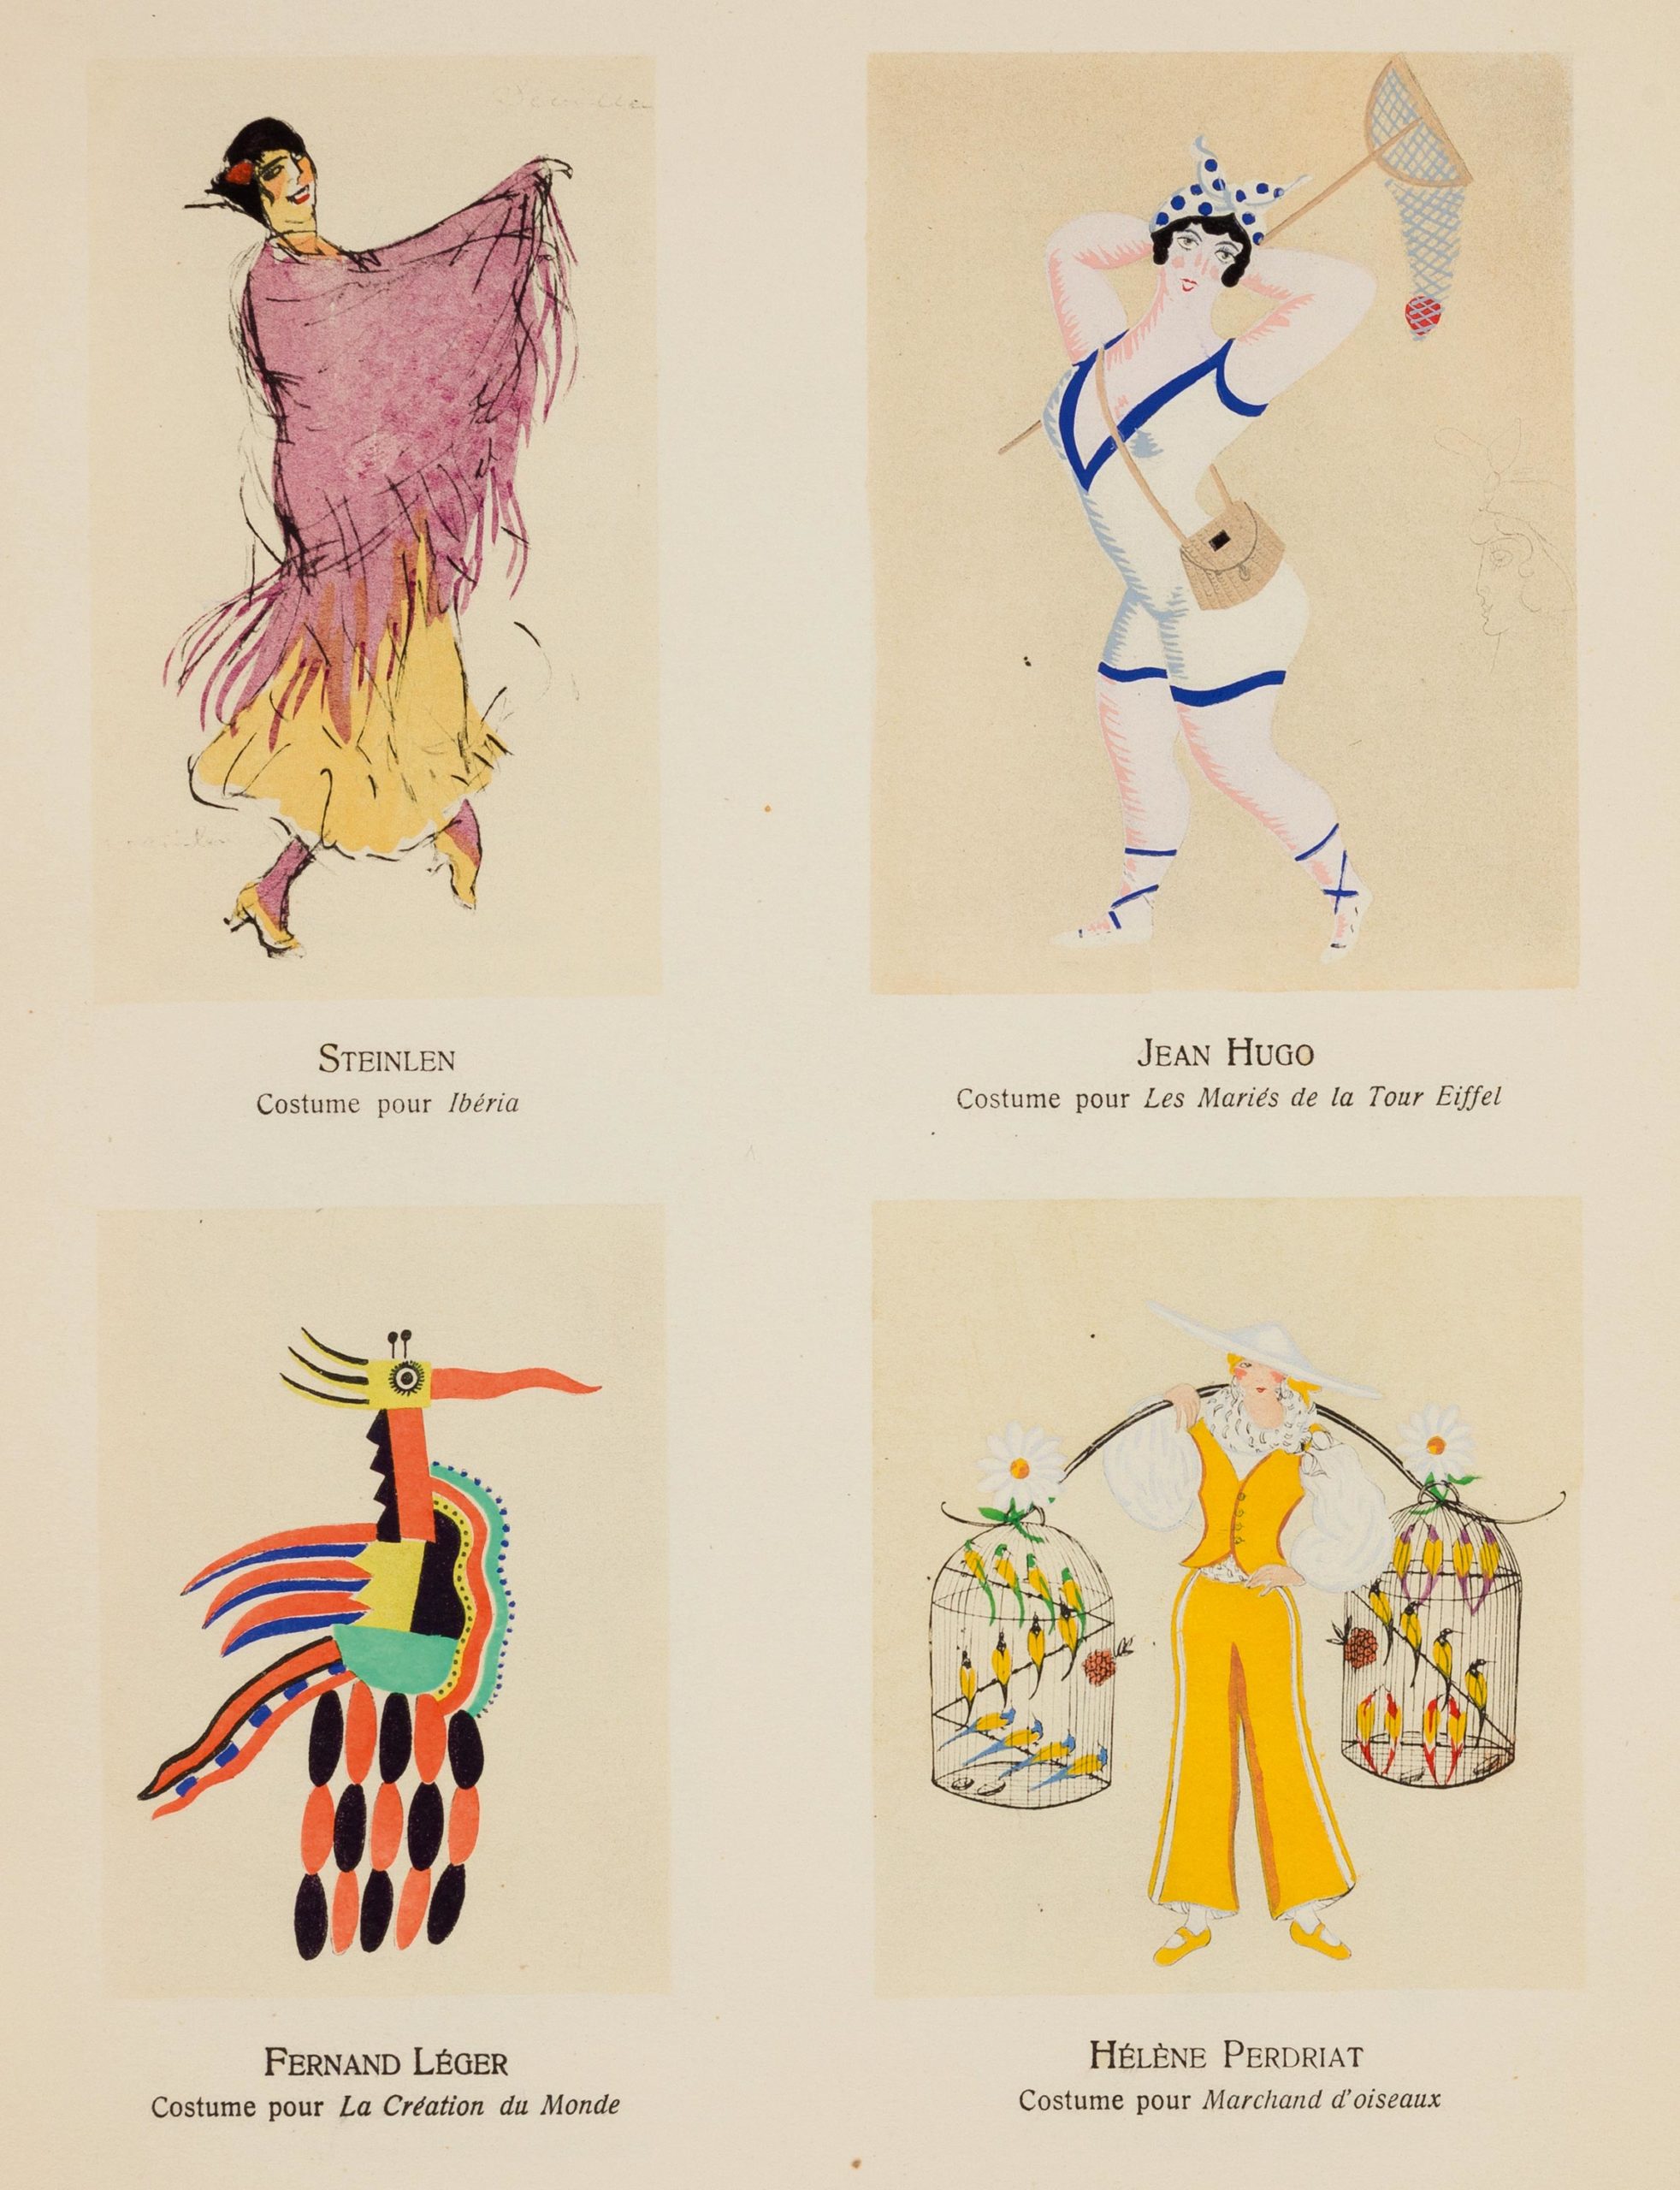 Lot 116 - Costumes divers par Steinlein, Léger, Hugo, Perdriat - Collection Pierre Landau